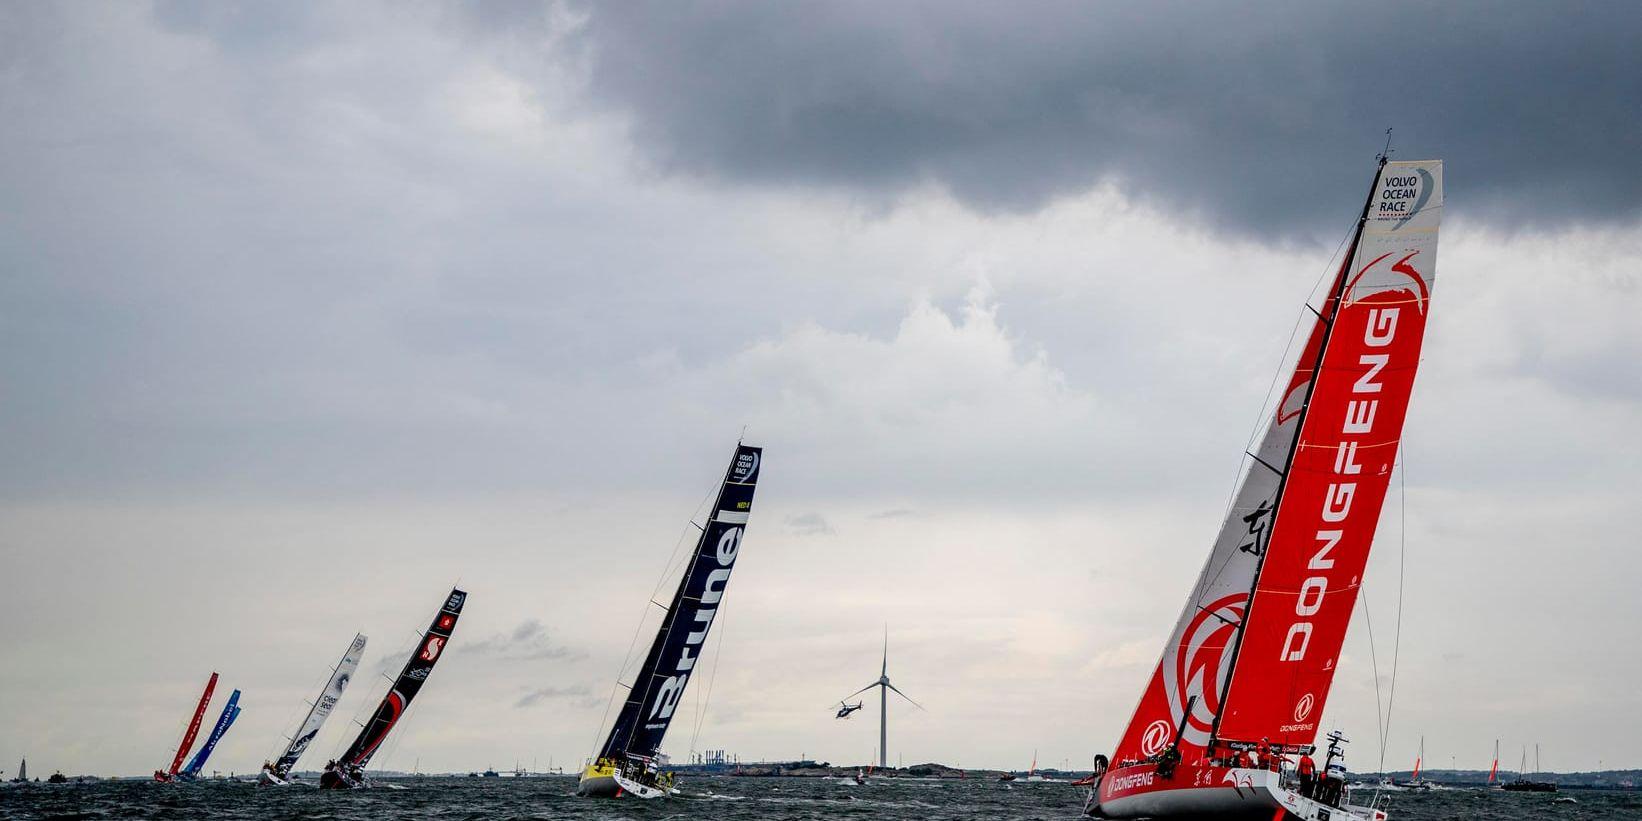 Ocean Race-båtarna har varit i Göteborg i en vecka, men drar nu vidare ut på sista etappen av tävlingen.